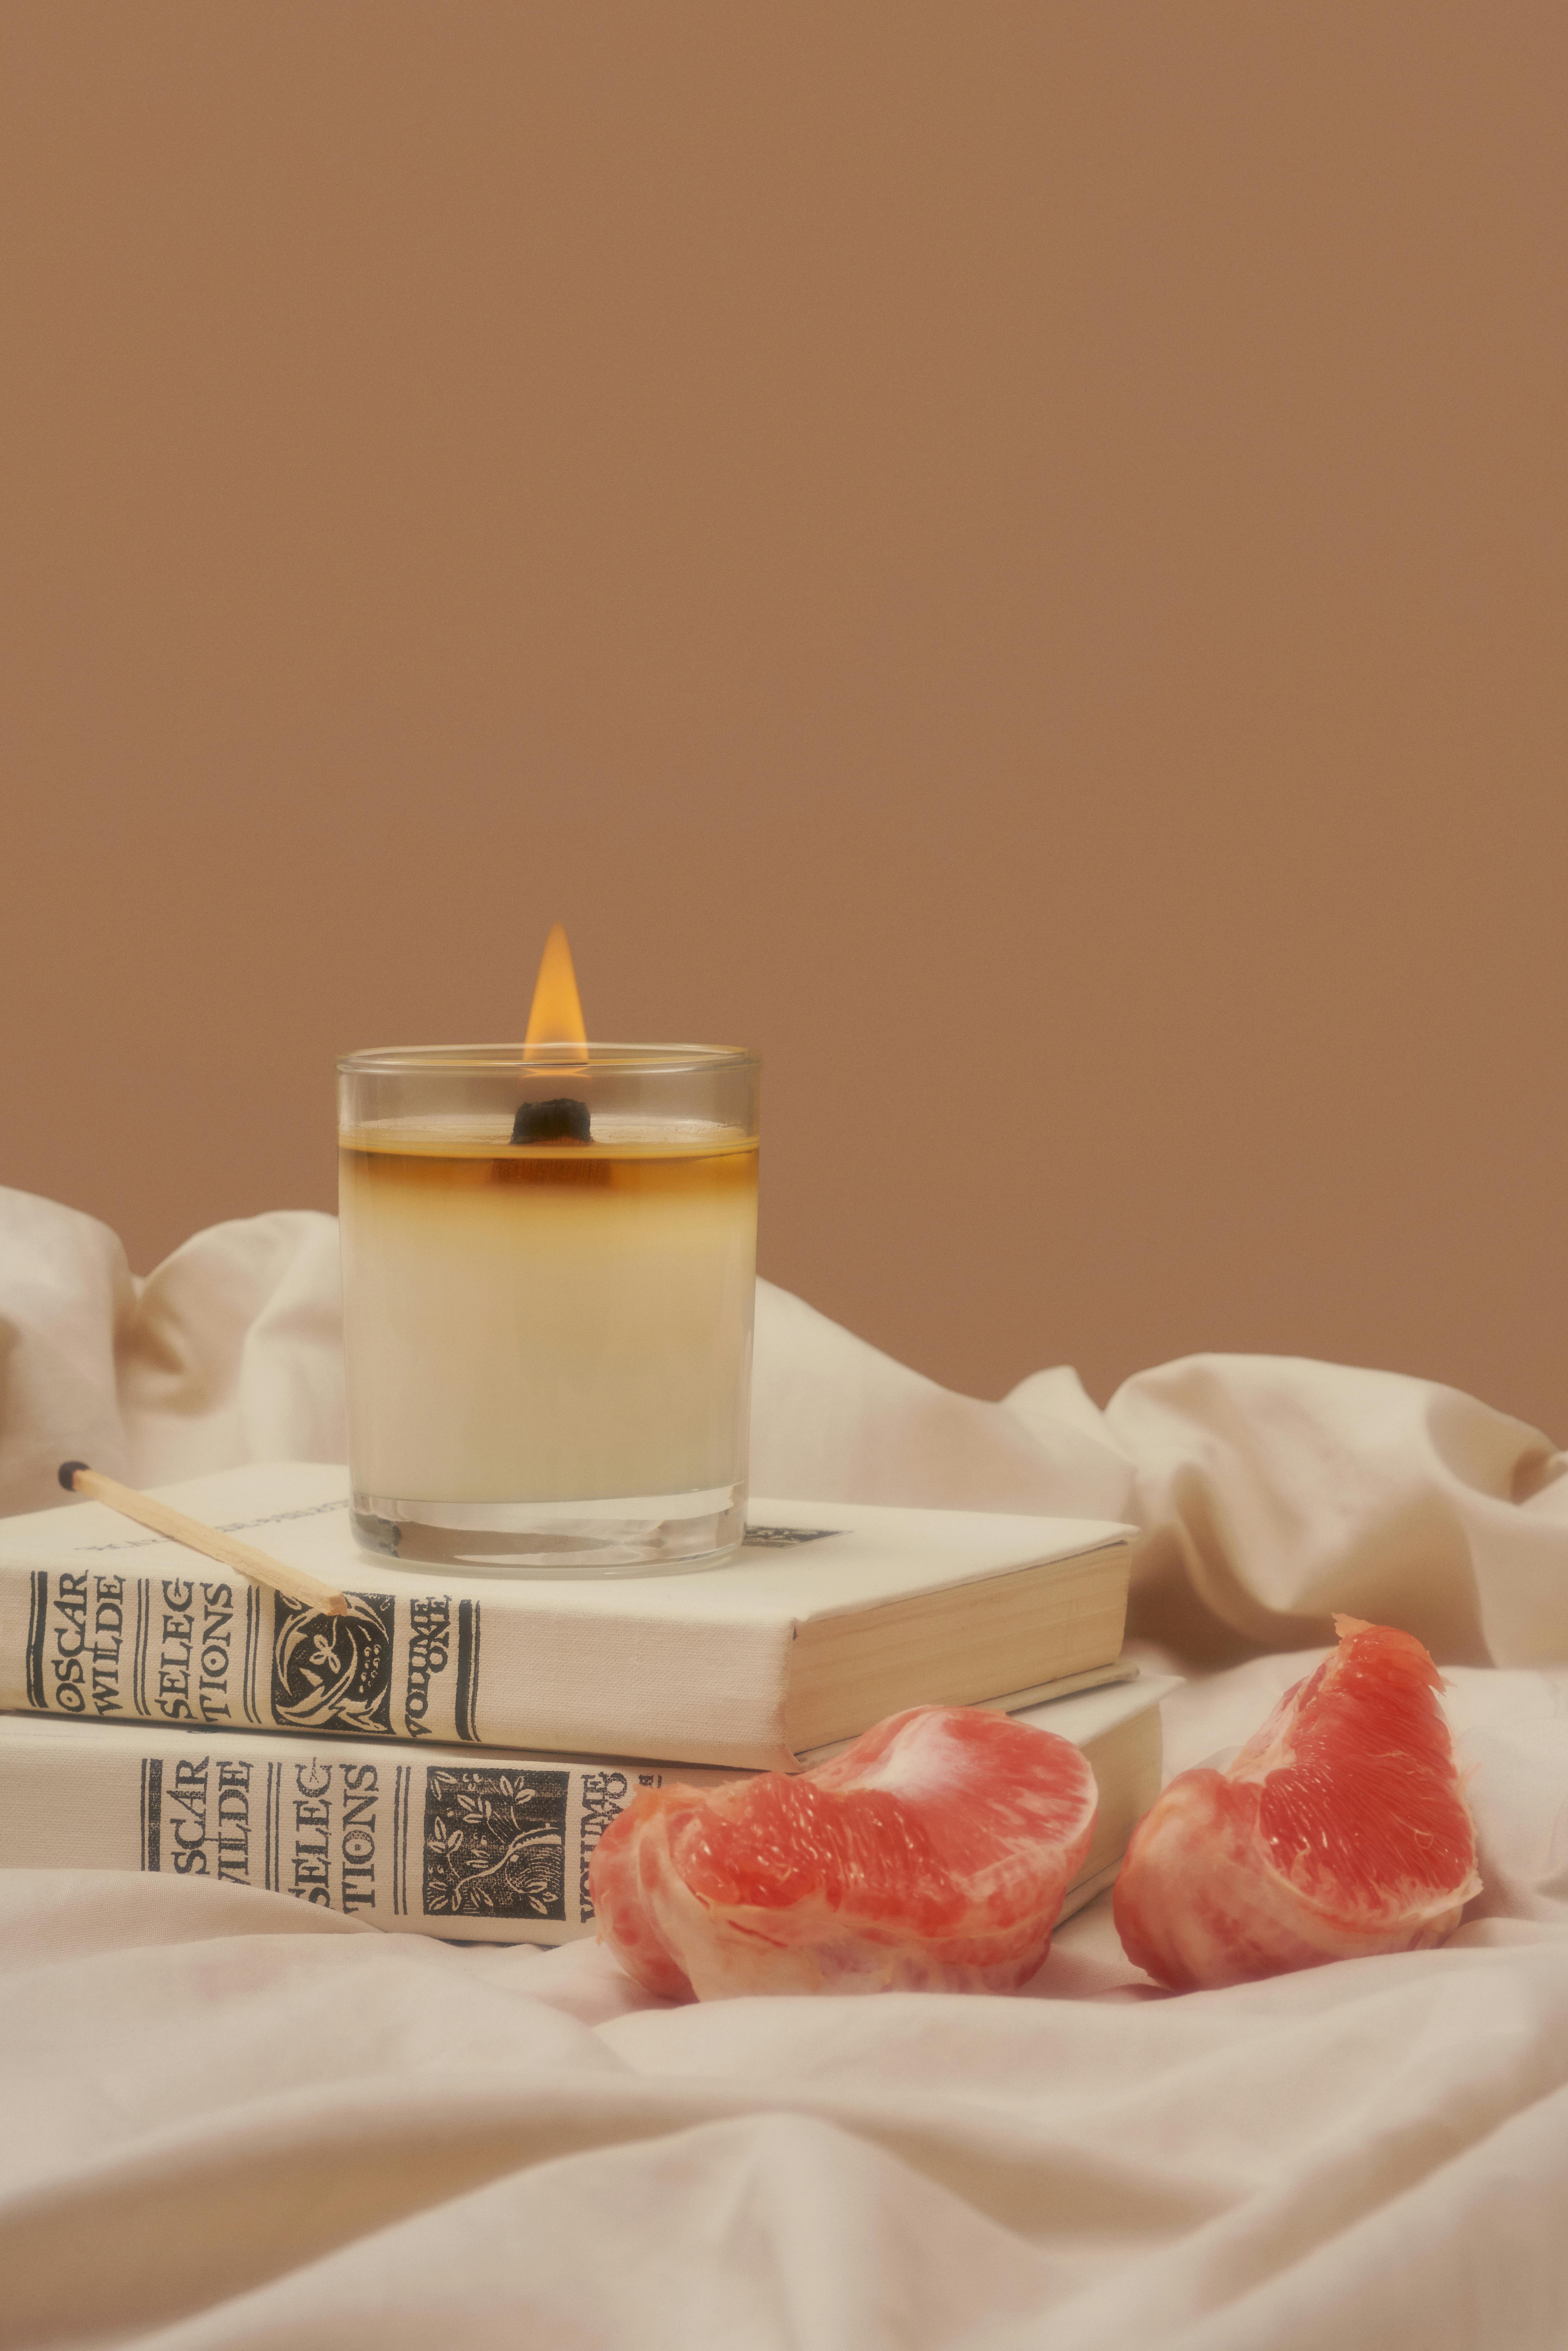 burning aroma candle on books near grapefruit